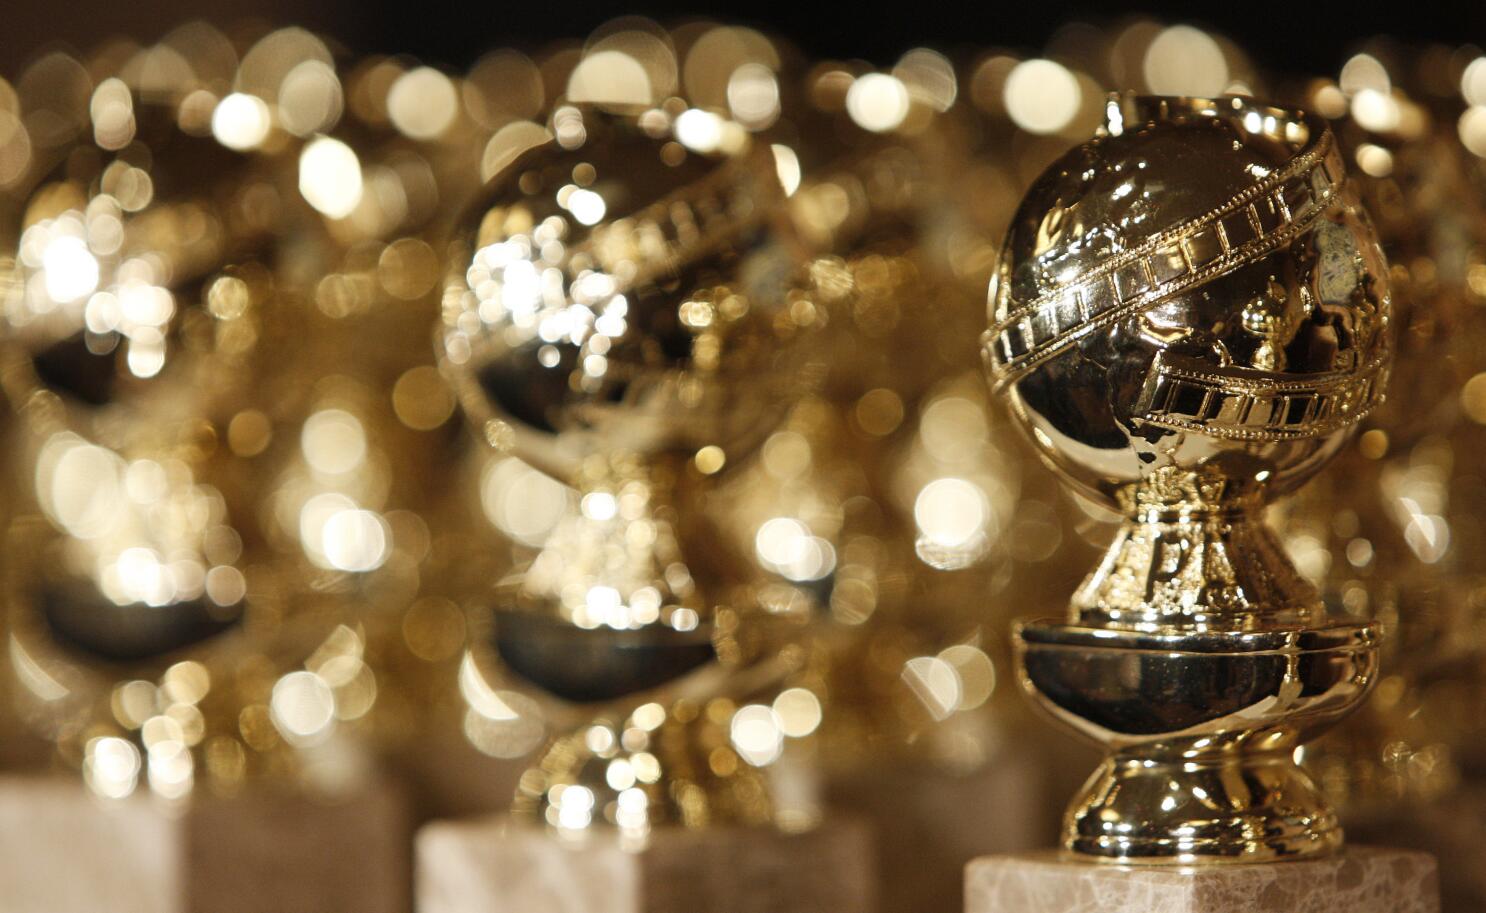 2023 Golden Globes Award winning TV series to binge watch - Luxebook